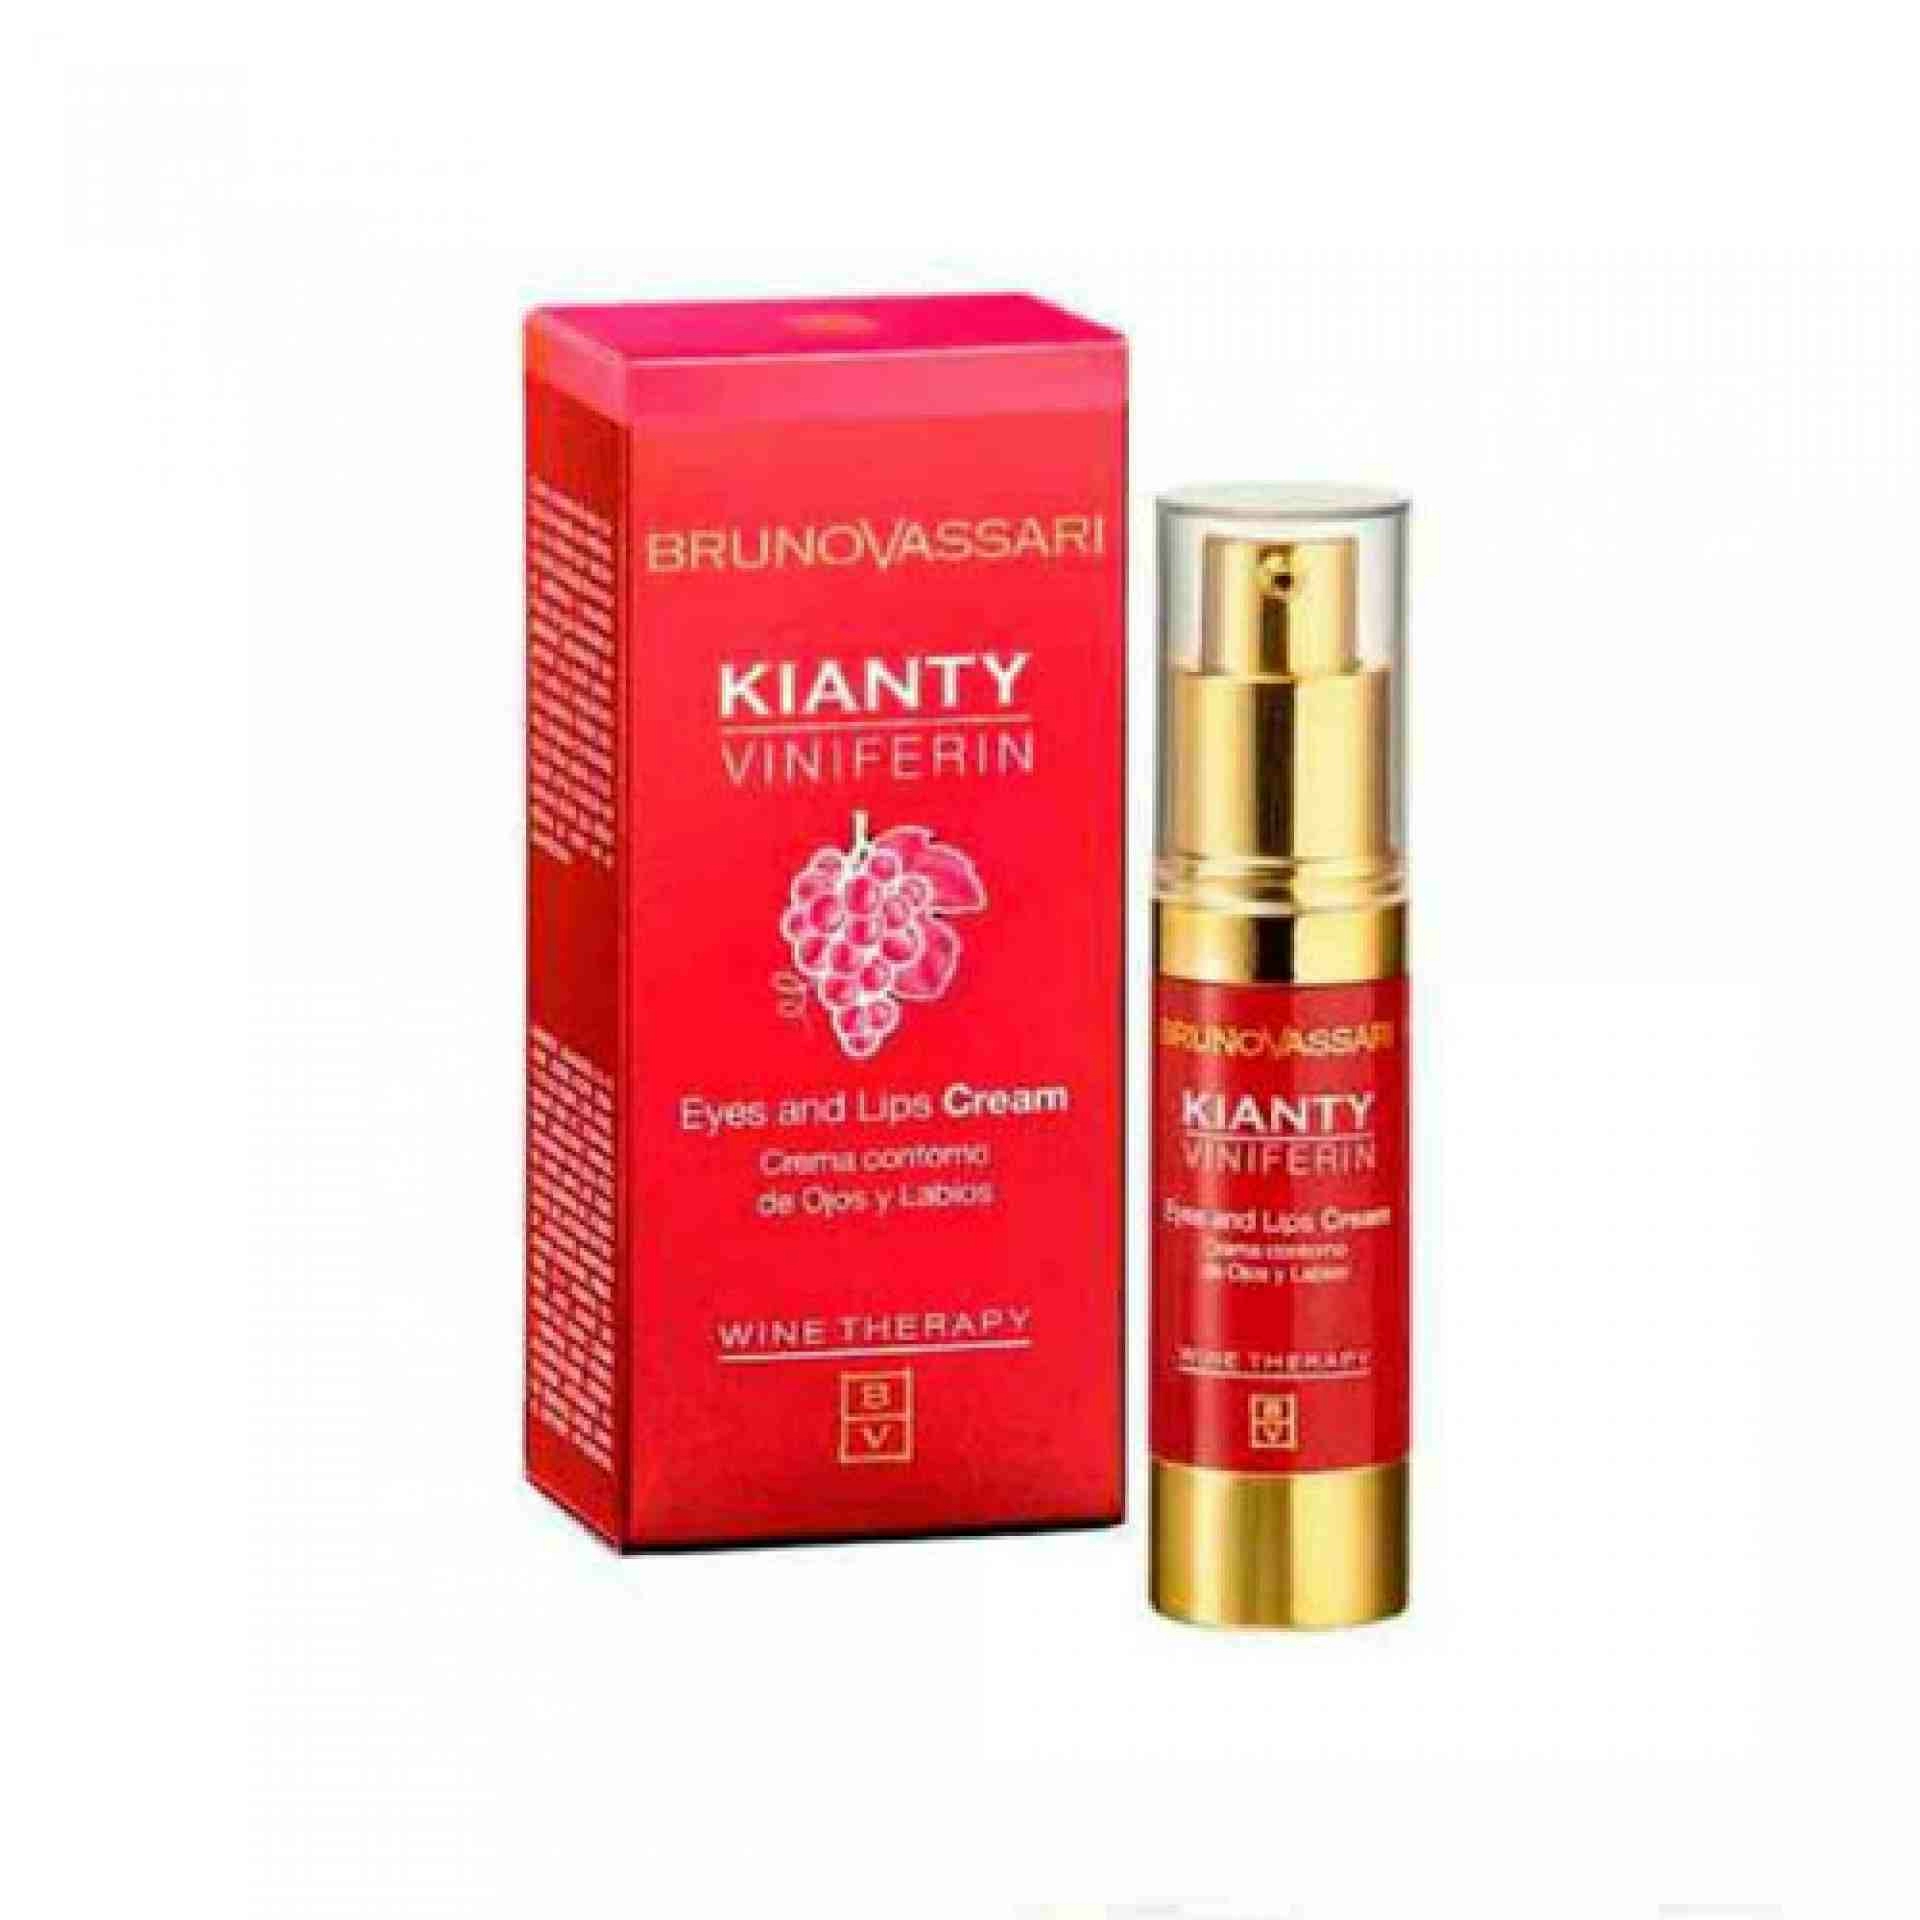 Eyes & Lips Cream | Crema contorno de ojos y labios 15ml - Kianty Experience - Bruno Vassari ®